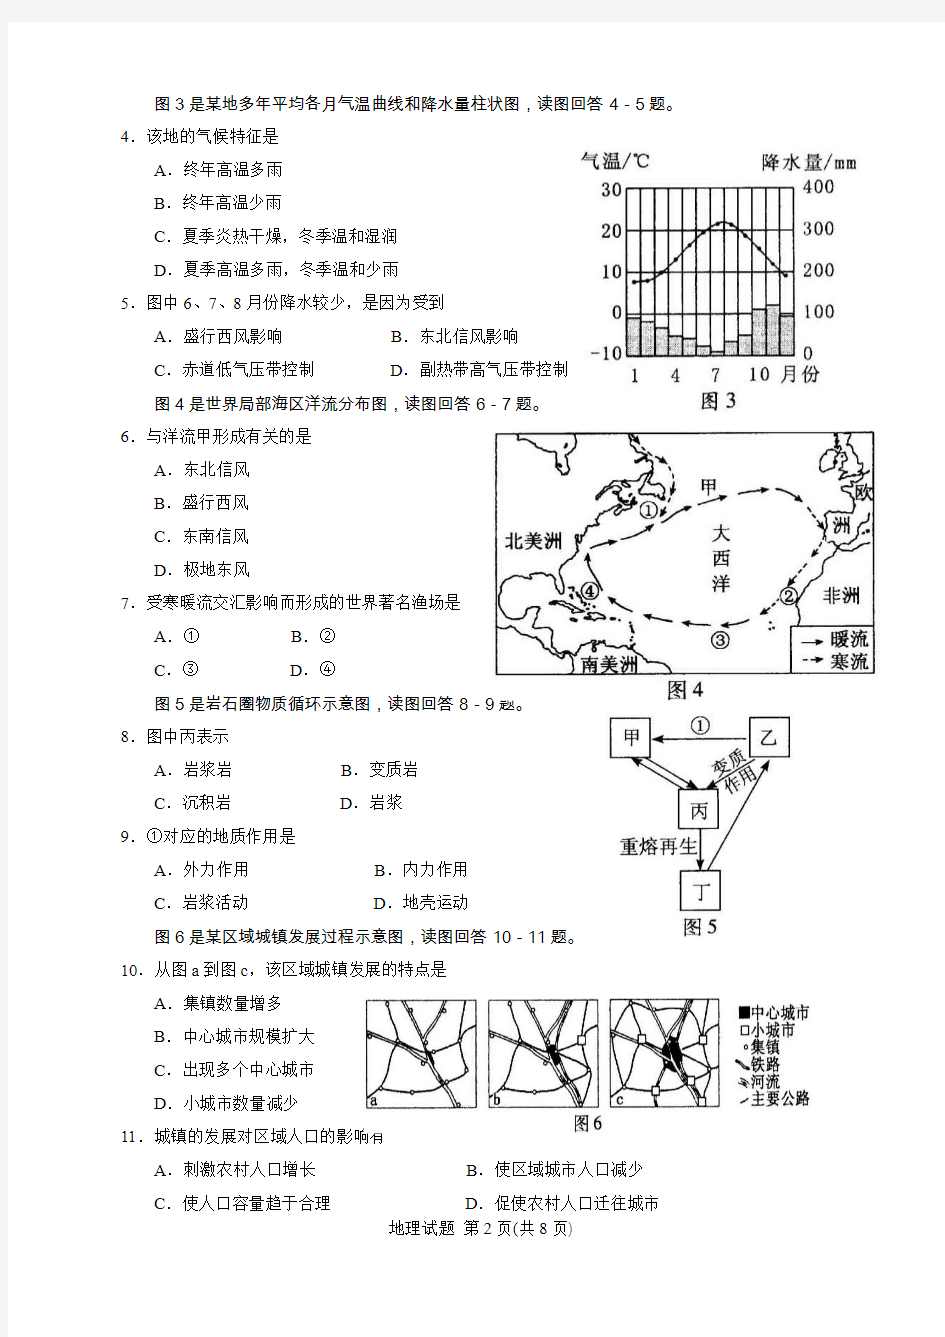 2018年1月福建省普通高中学生学业基础会考地理试题(含答案评分标准)